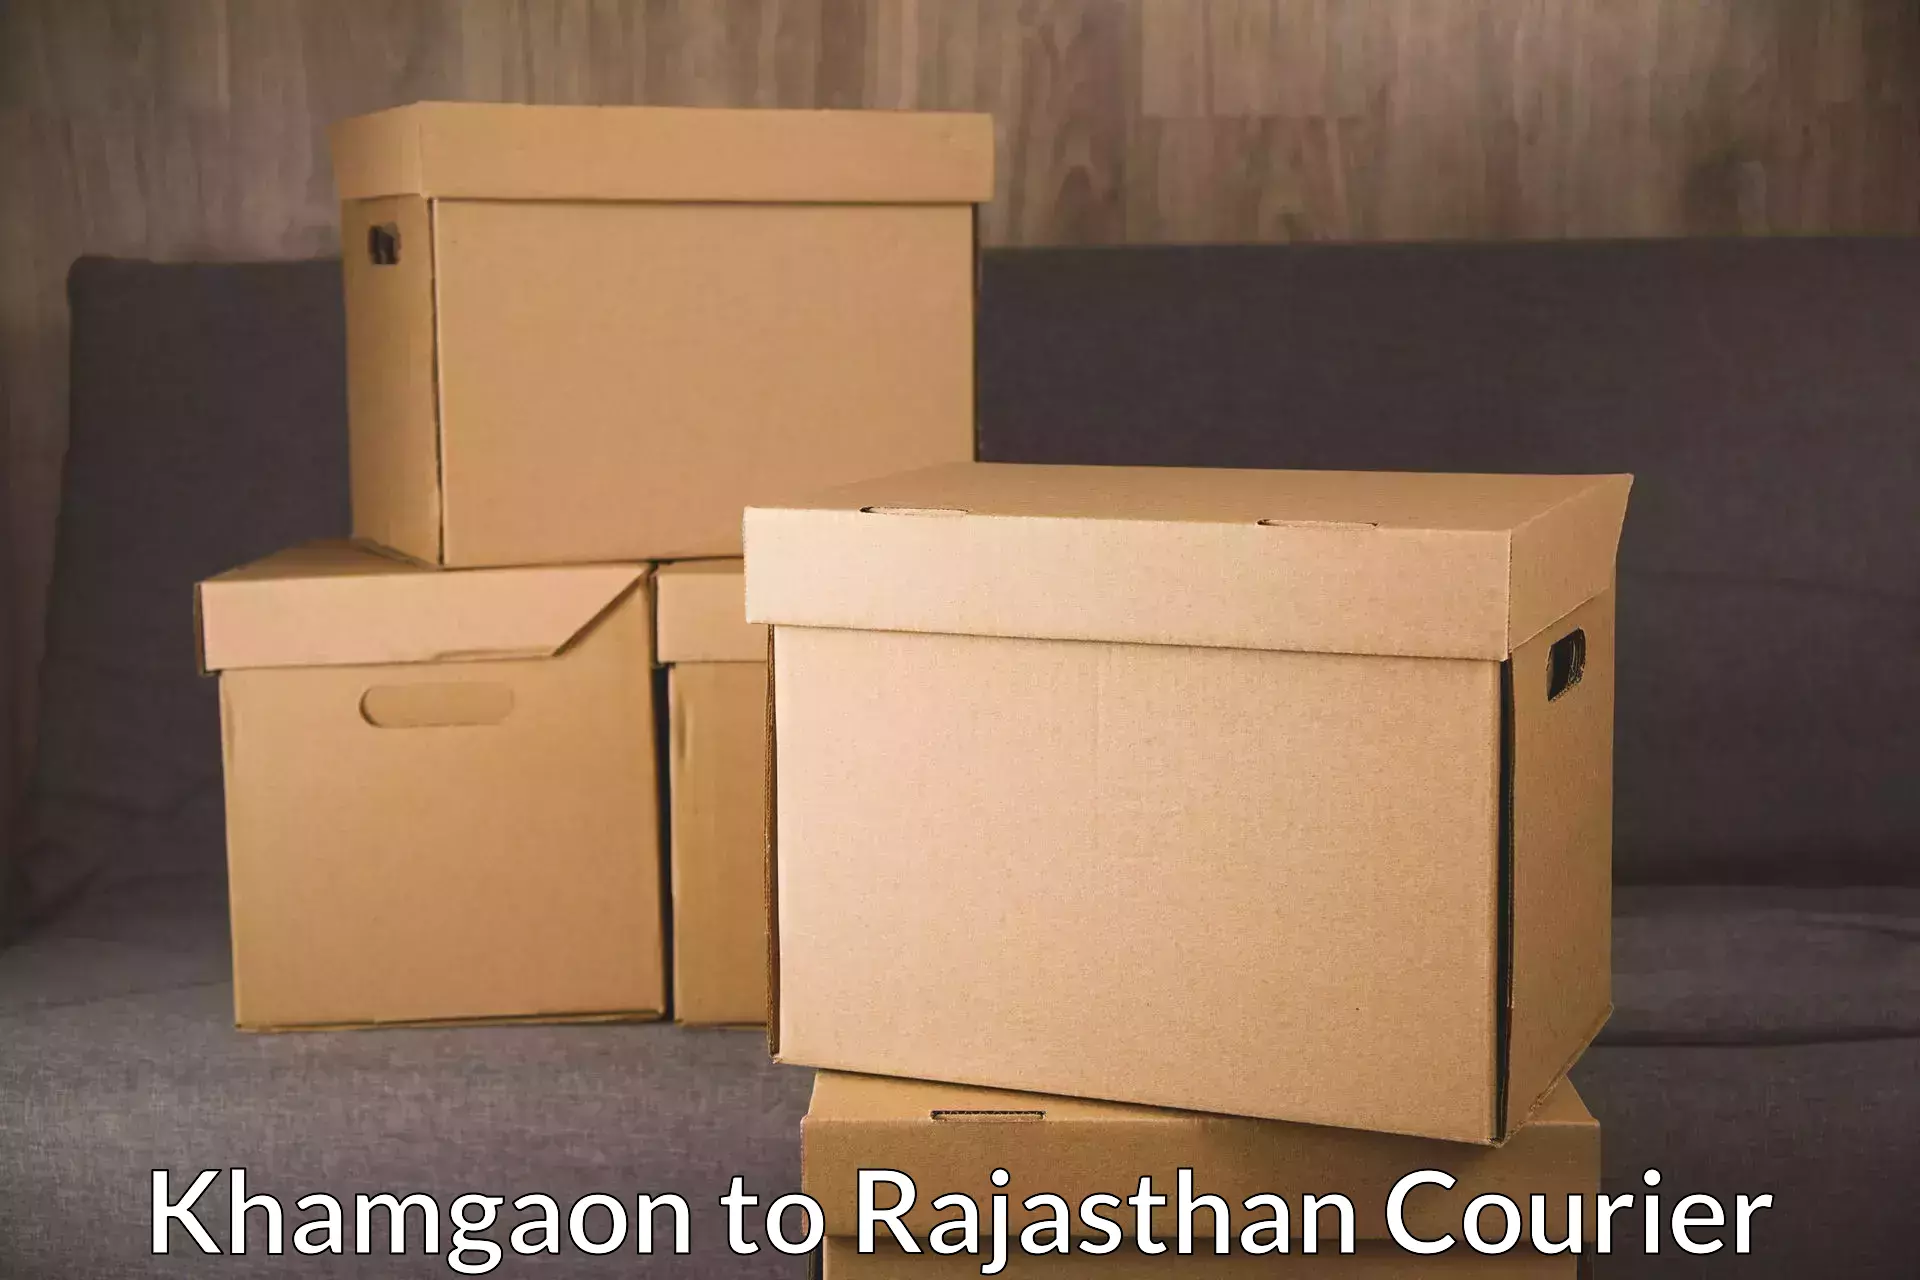 24-hour courier service Khamgaon to Jojawar